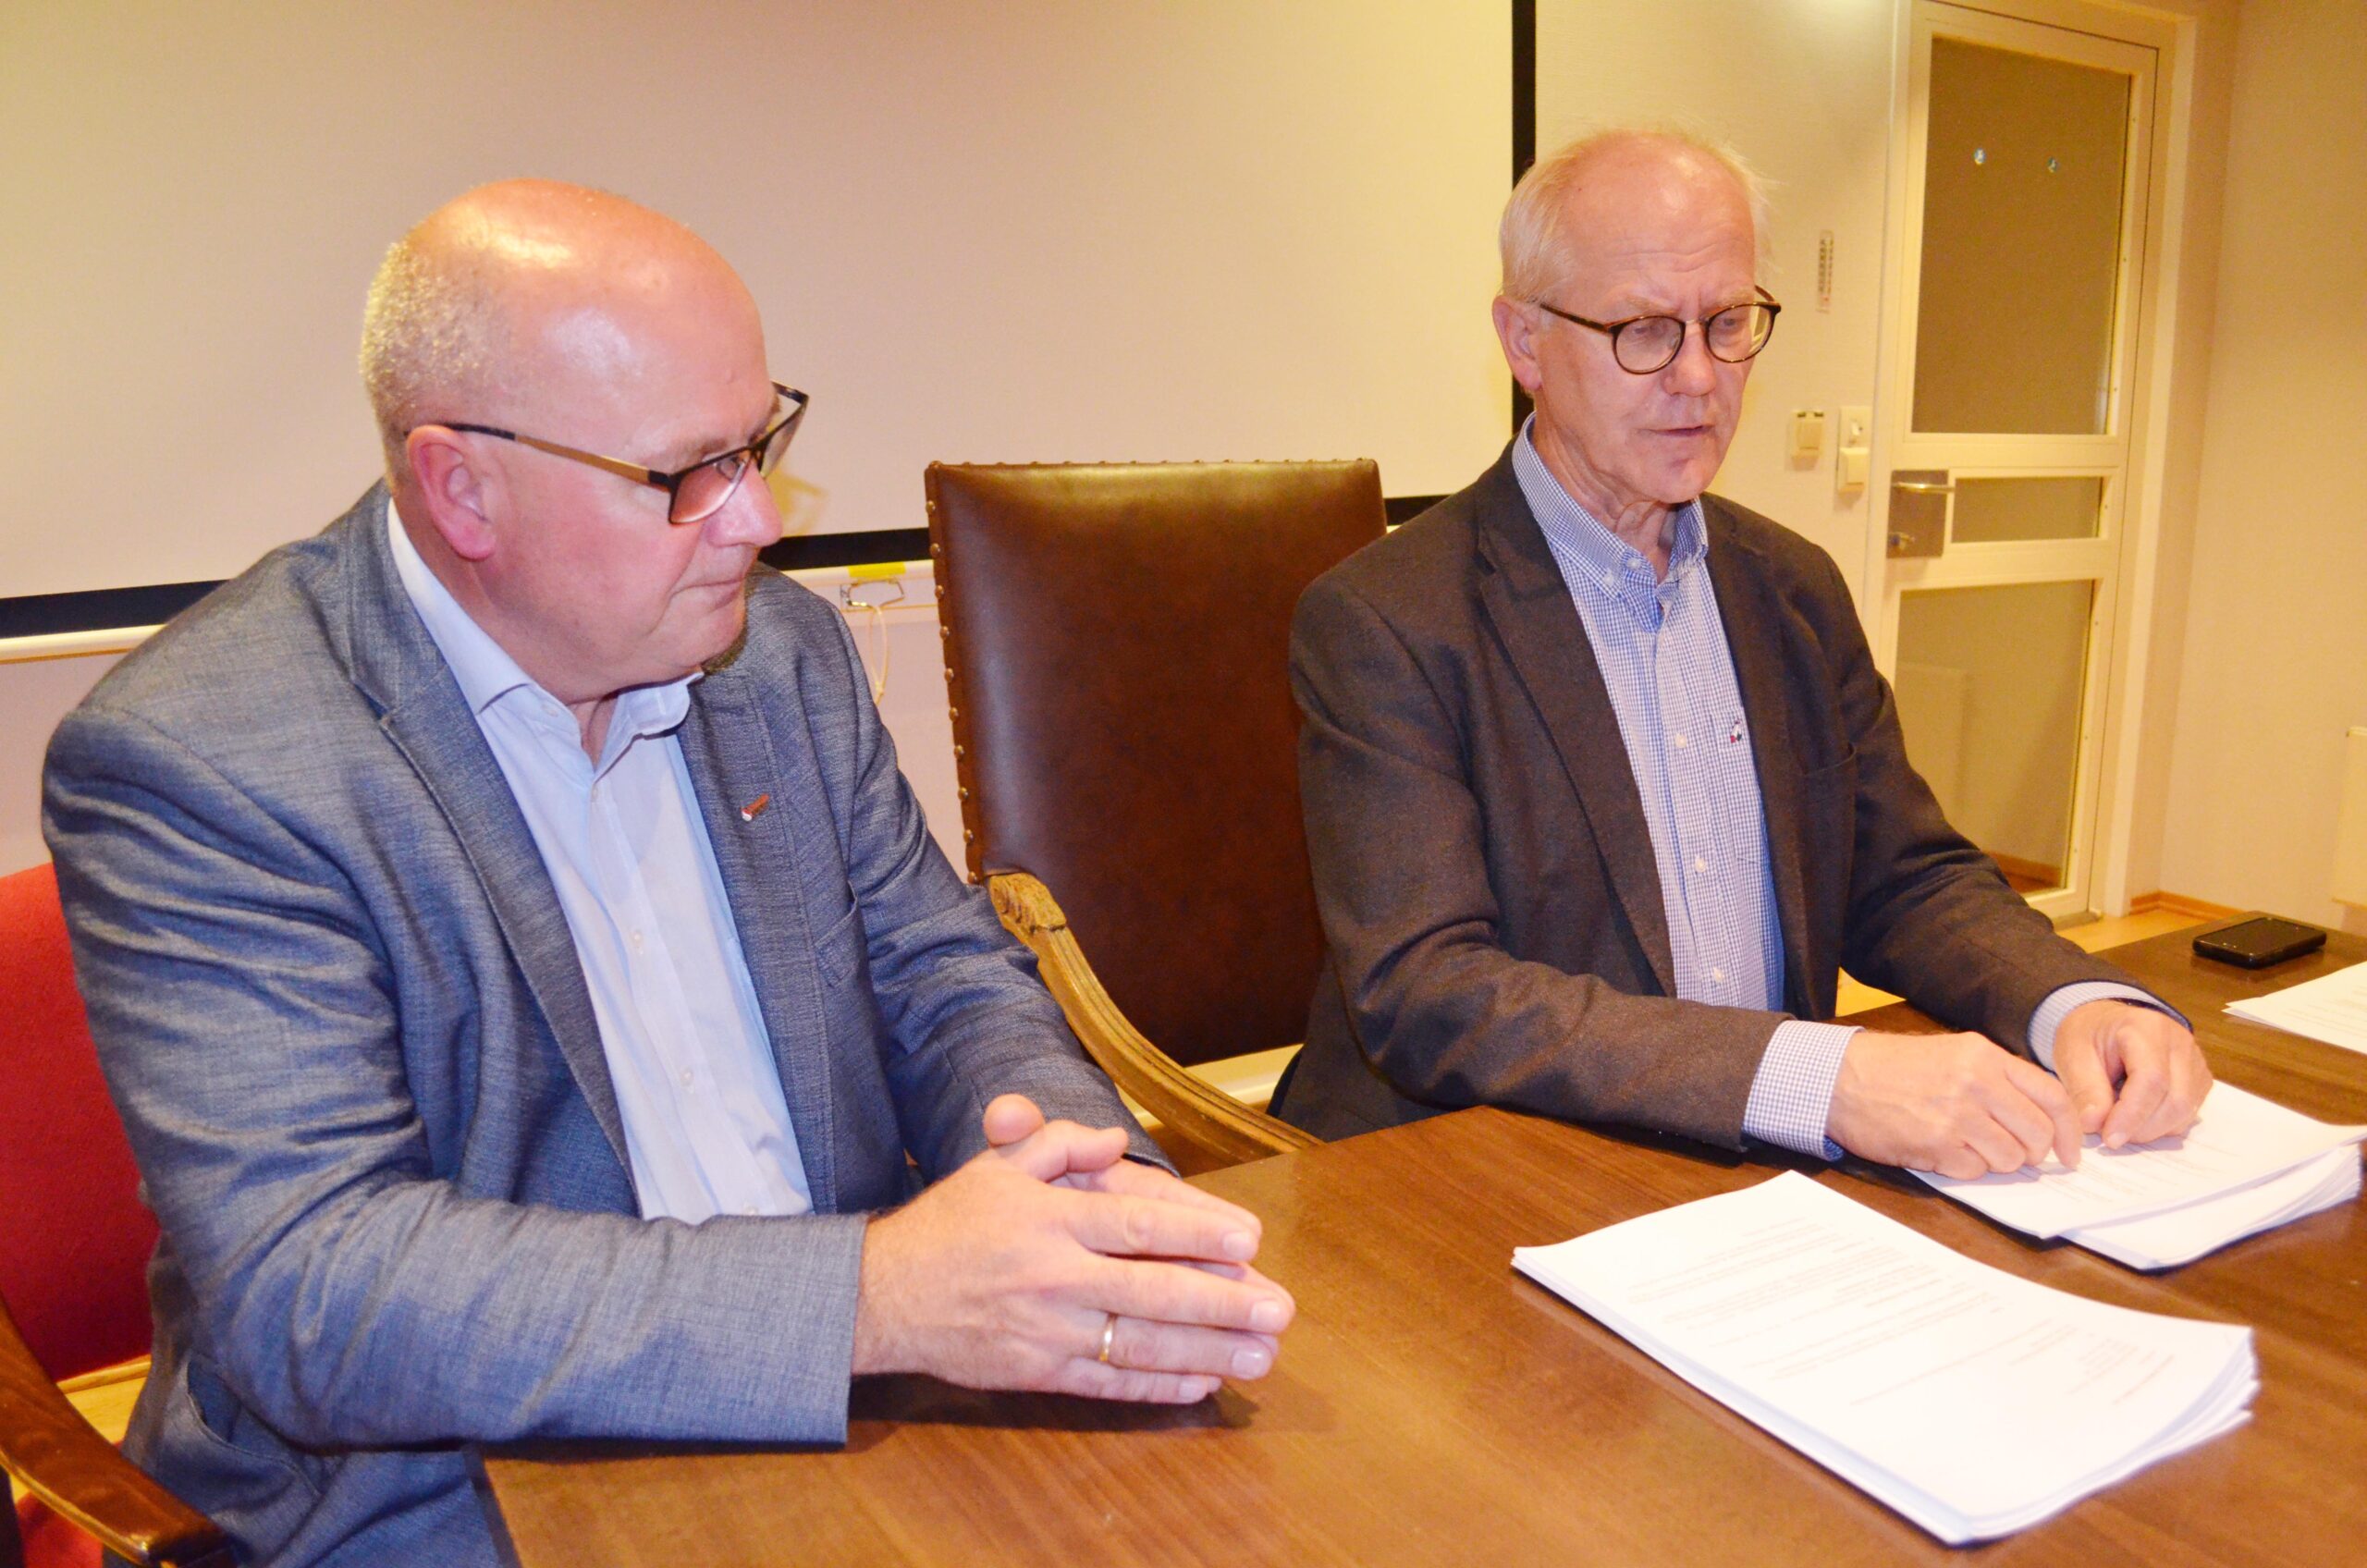 Fra venstre: Forhandlingsleder Asle Reime i Industri Energi og mekler Geir Engebretsen